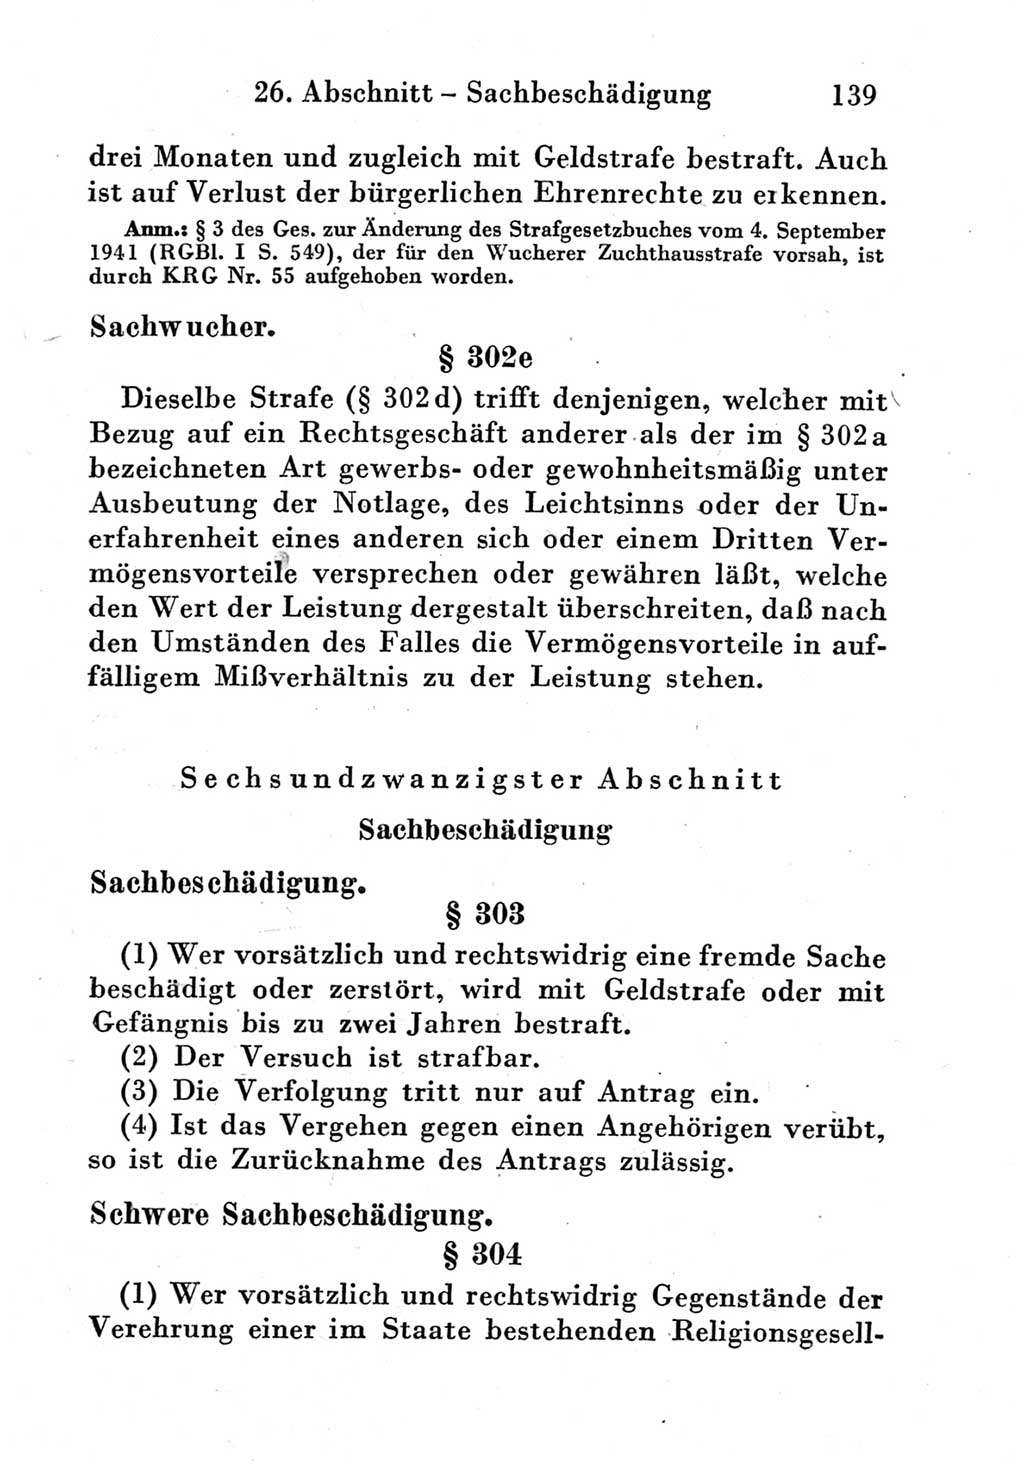 Strafgesetzbuch (StGB) und andere Strafgesetze [Deutsche Demokratische Republik (DDR)] 1951, Seite 139 (StGB Strafges. DDR 1951, S. 139)